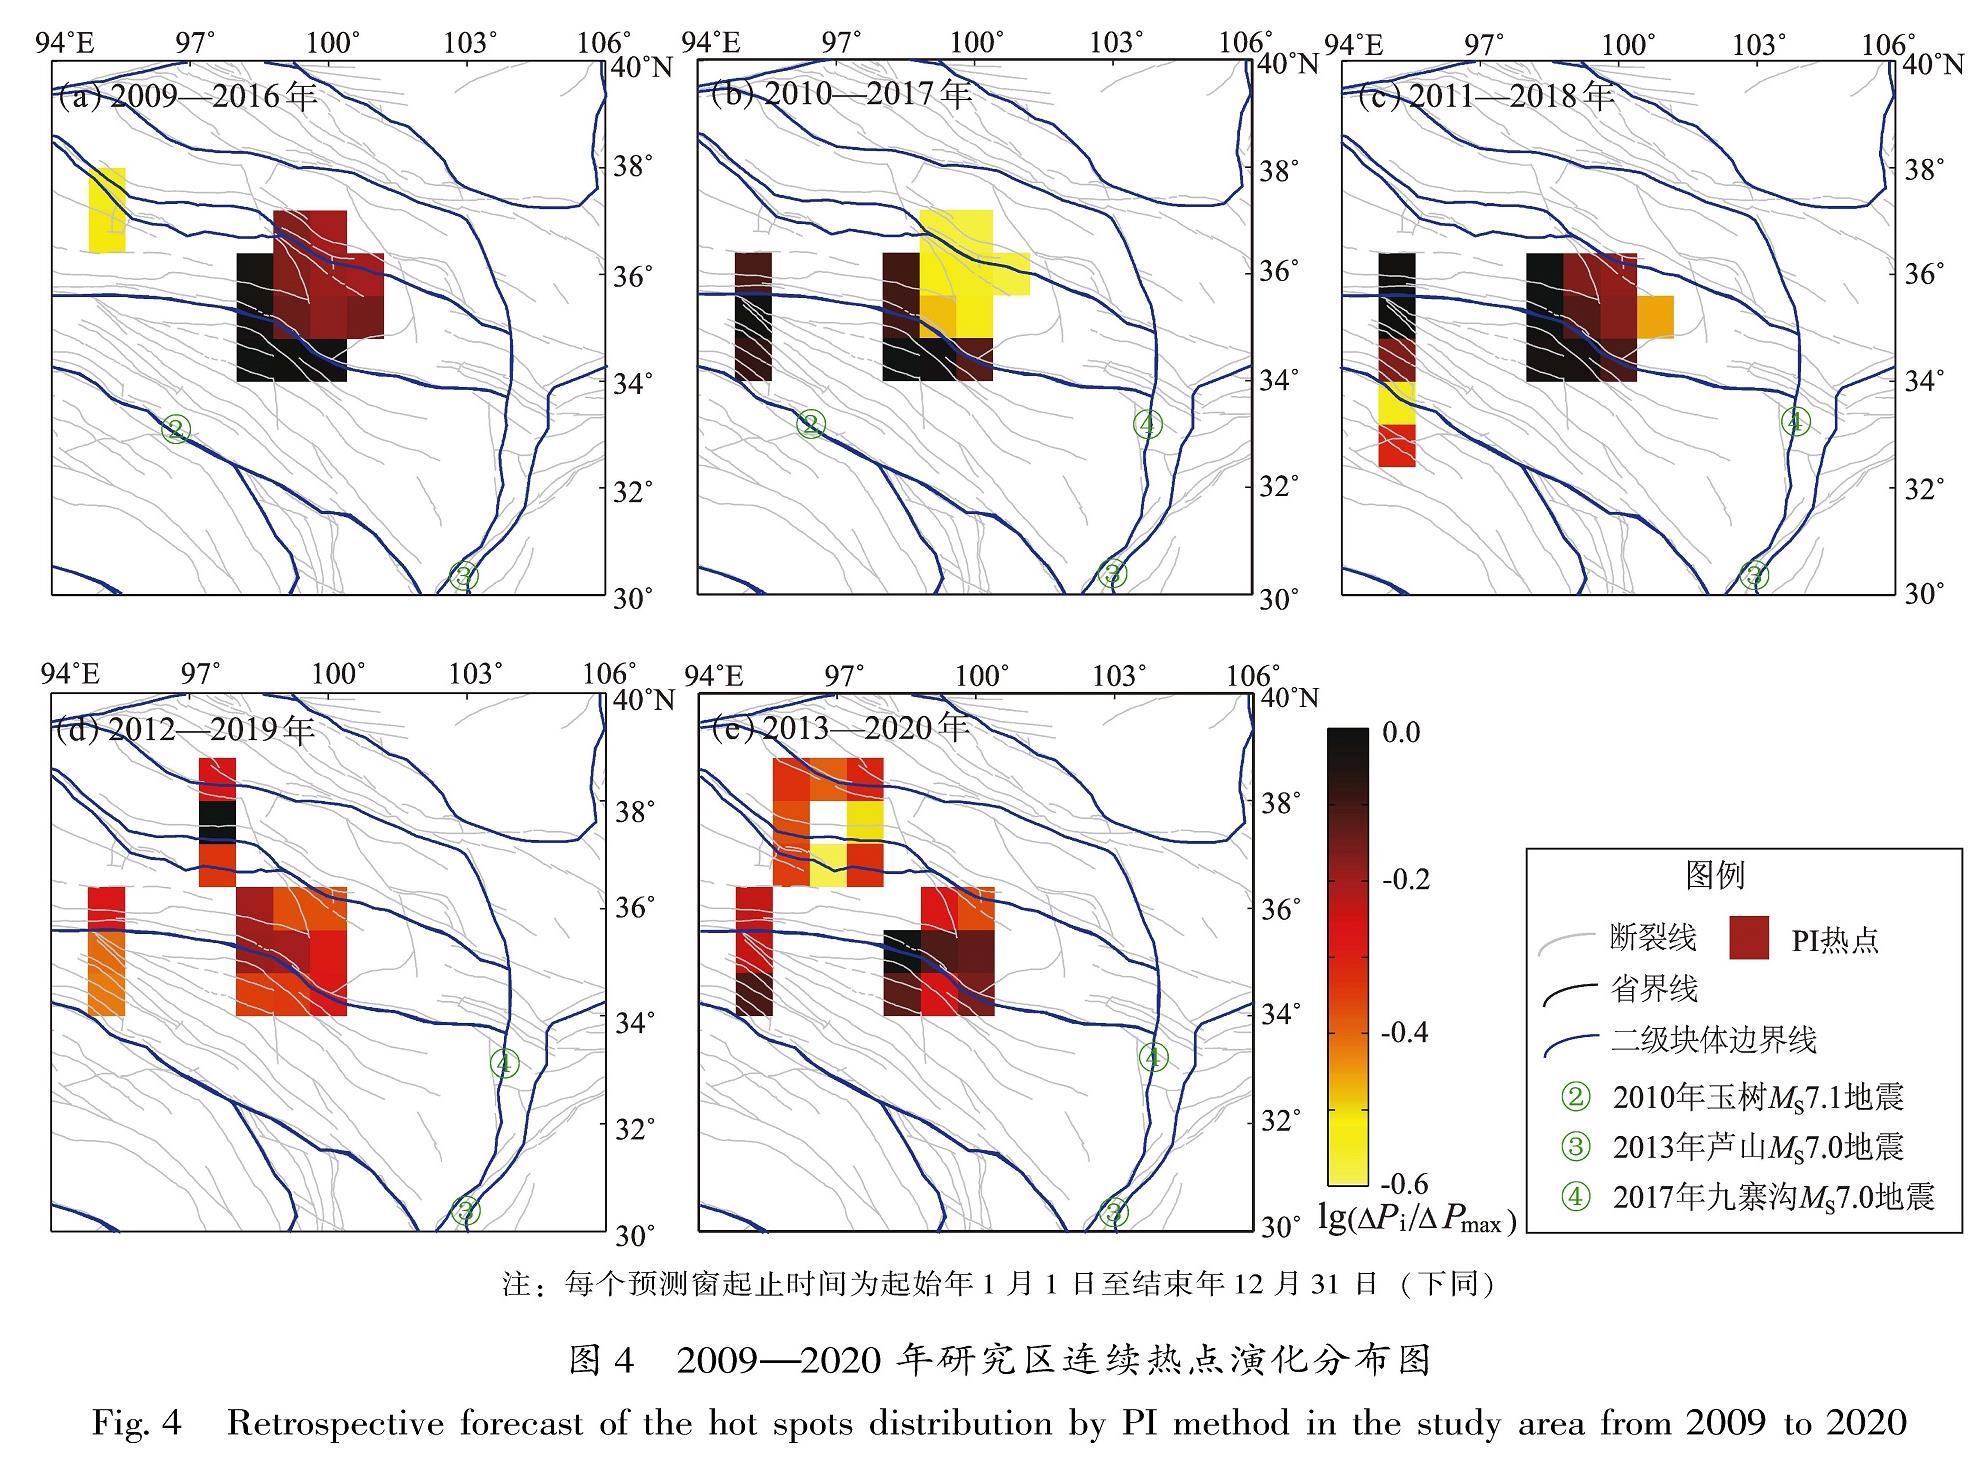 图4 2009—2020年研究区连续热点演化分布图<br/>Fig.4 Retrospective forecast of the hot spots distribution by PI method in the study area from 2009 to 2020